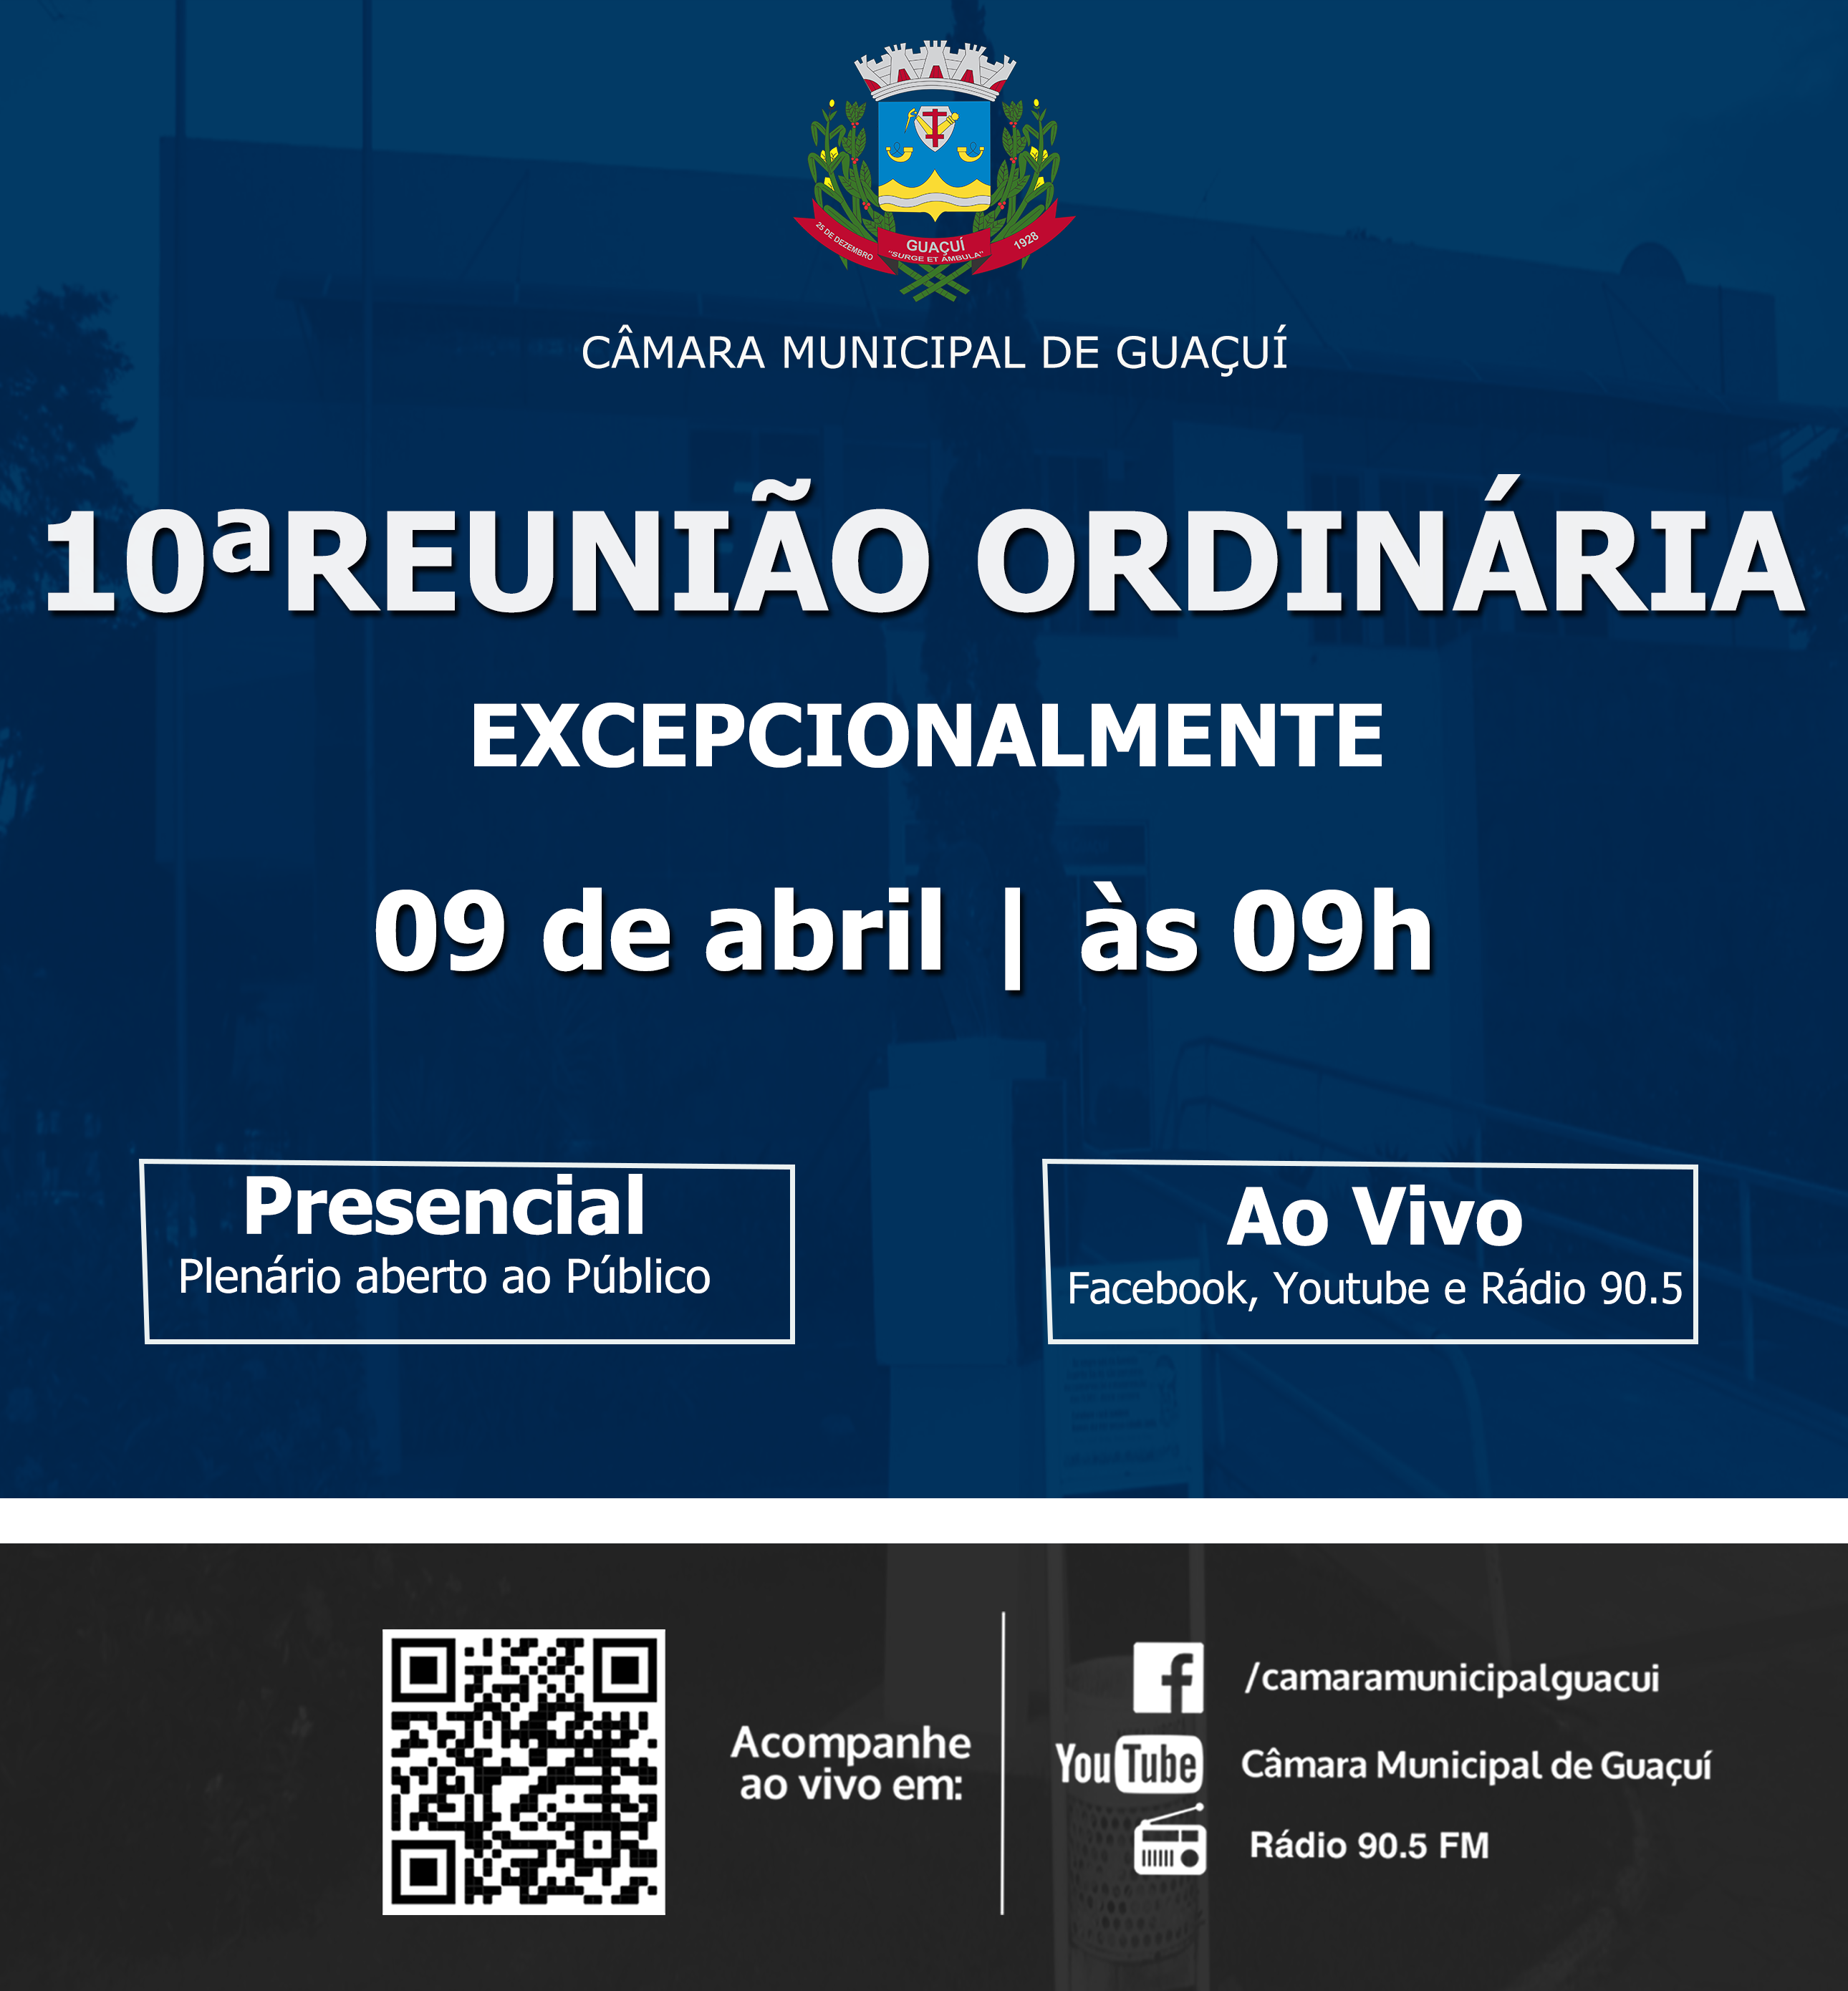 10ª REUNIÃO ORDINÁRIA.